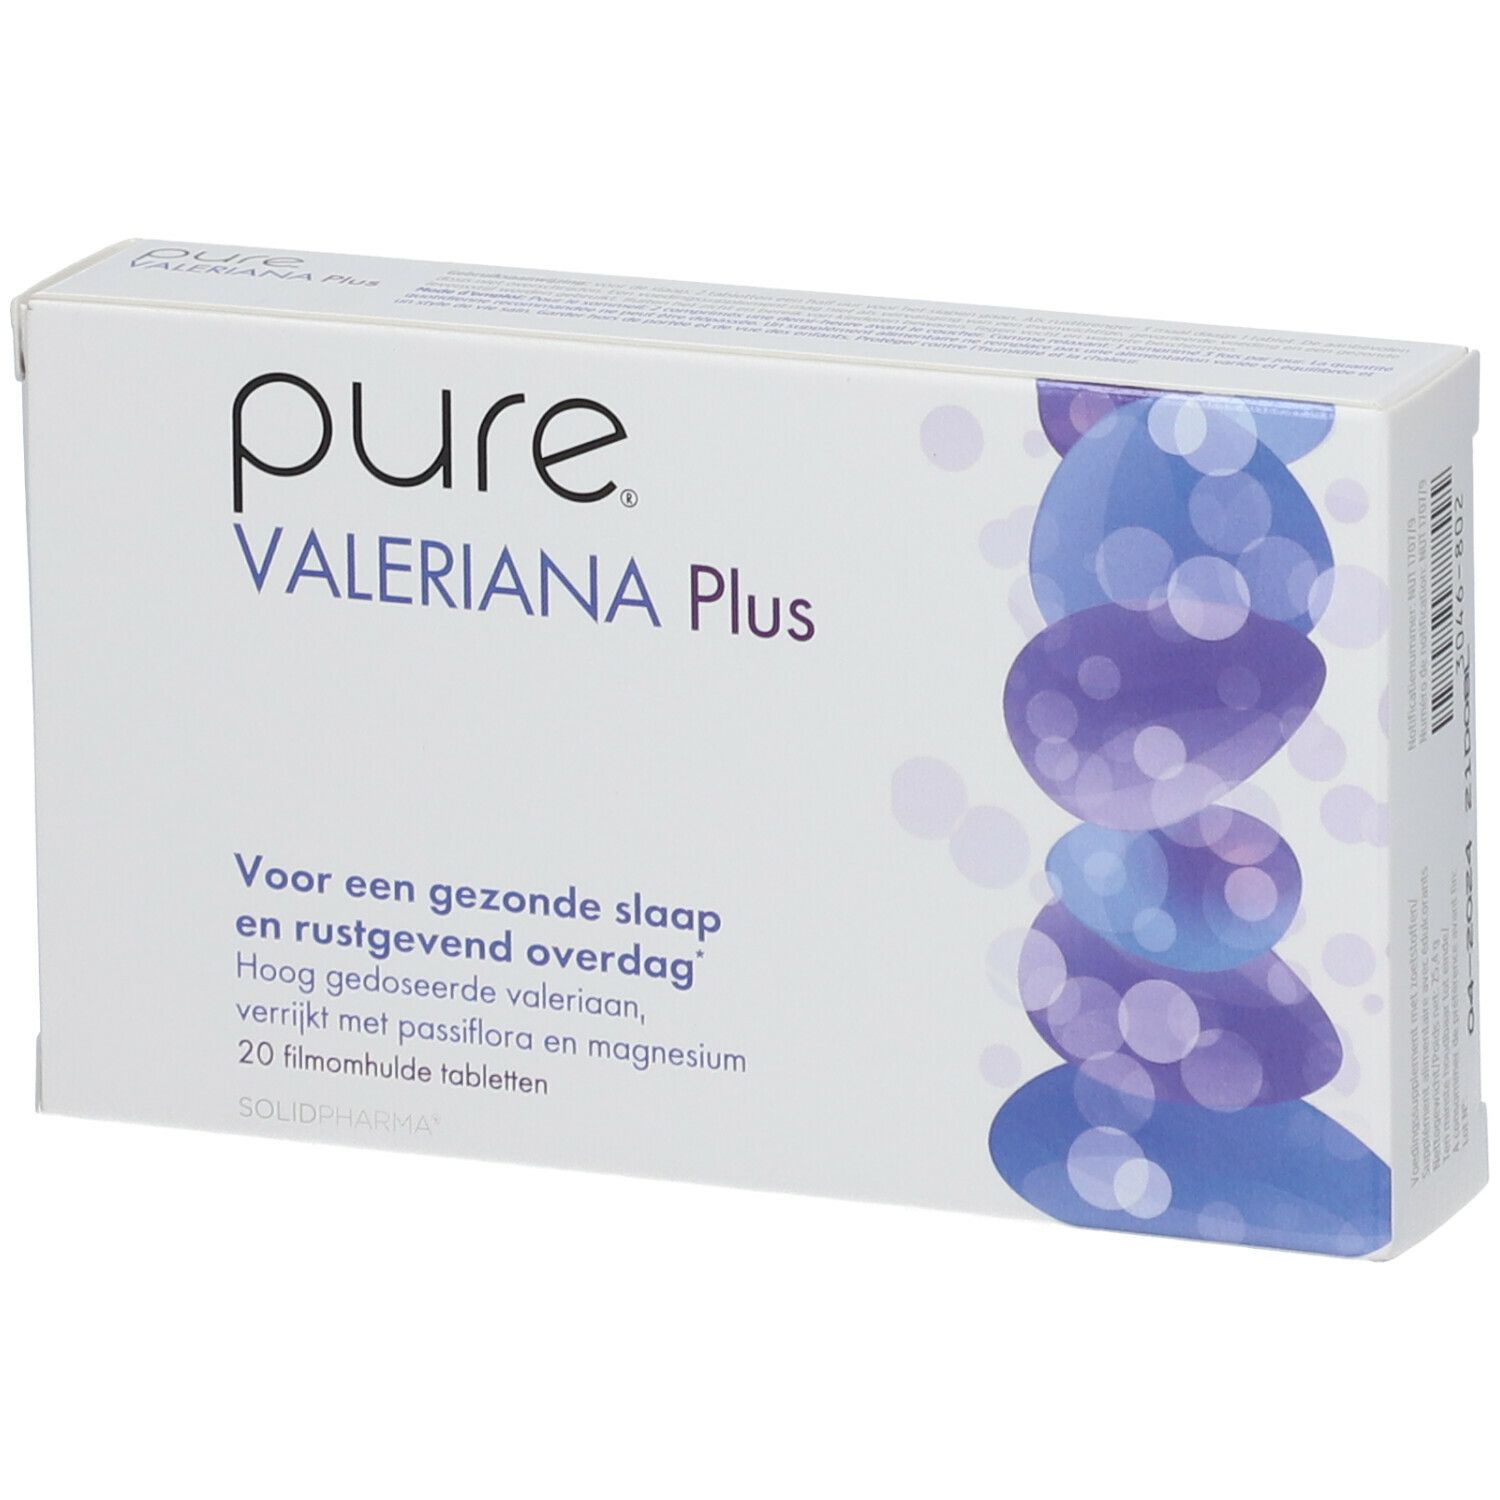 Pure® Valeriana Plus